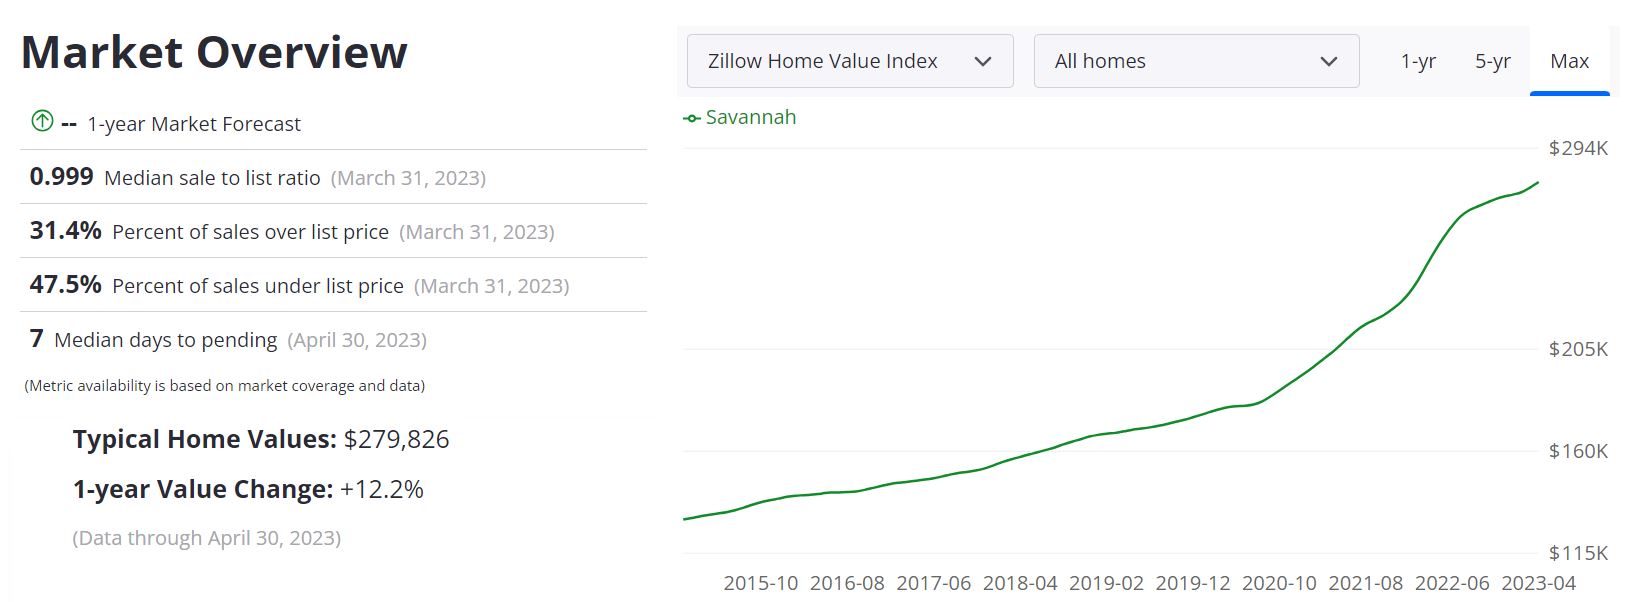 Savannah Housing Market Forecast